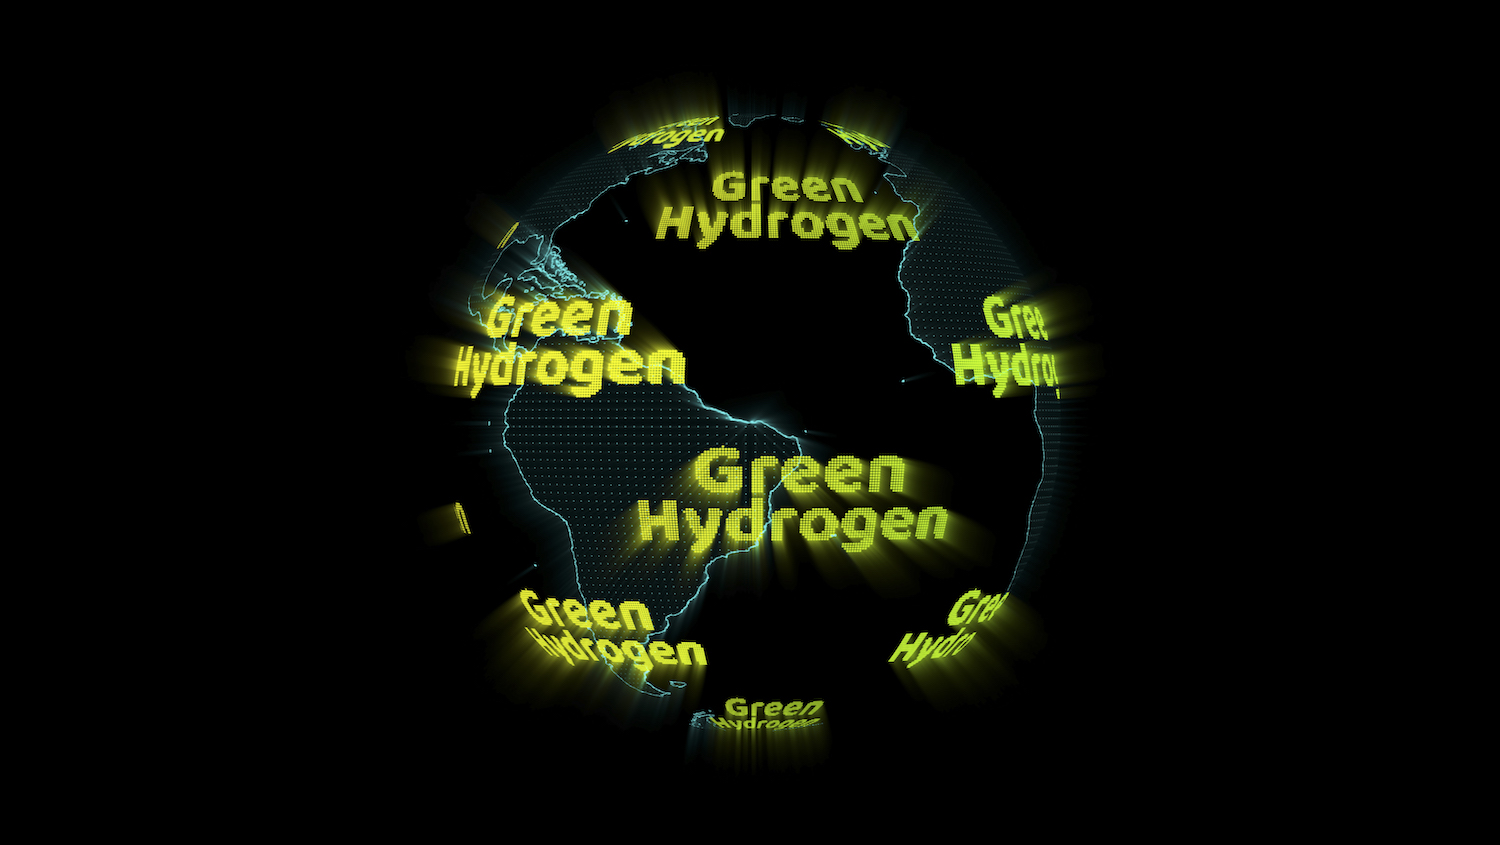 .idrogeno verde, decarbonizzazione, cambiare strategia energetica